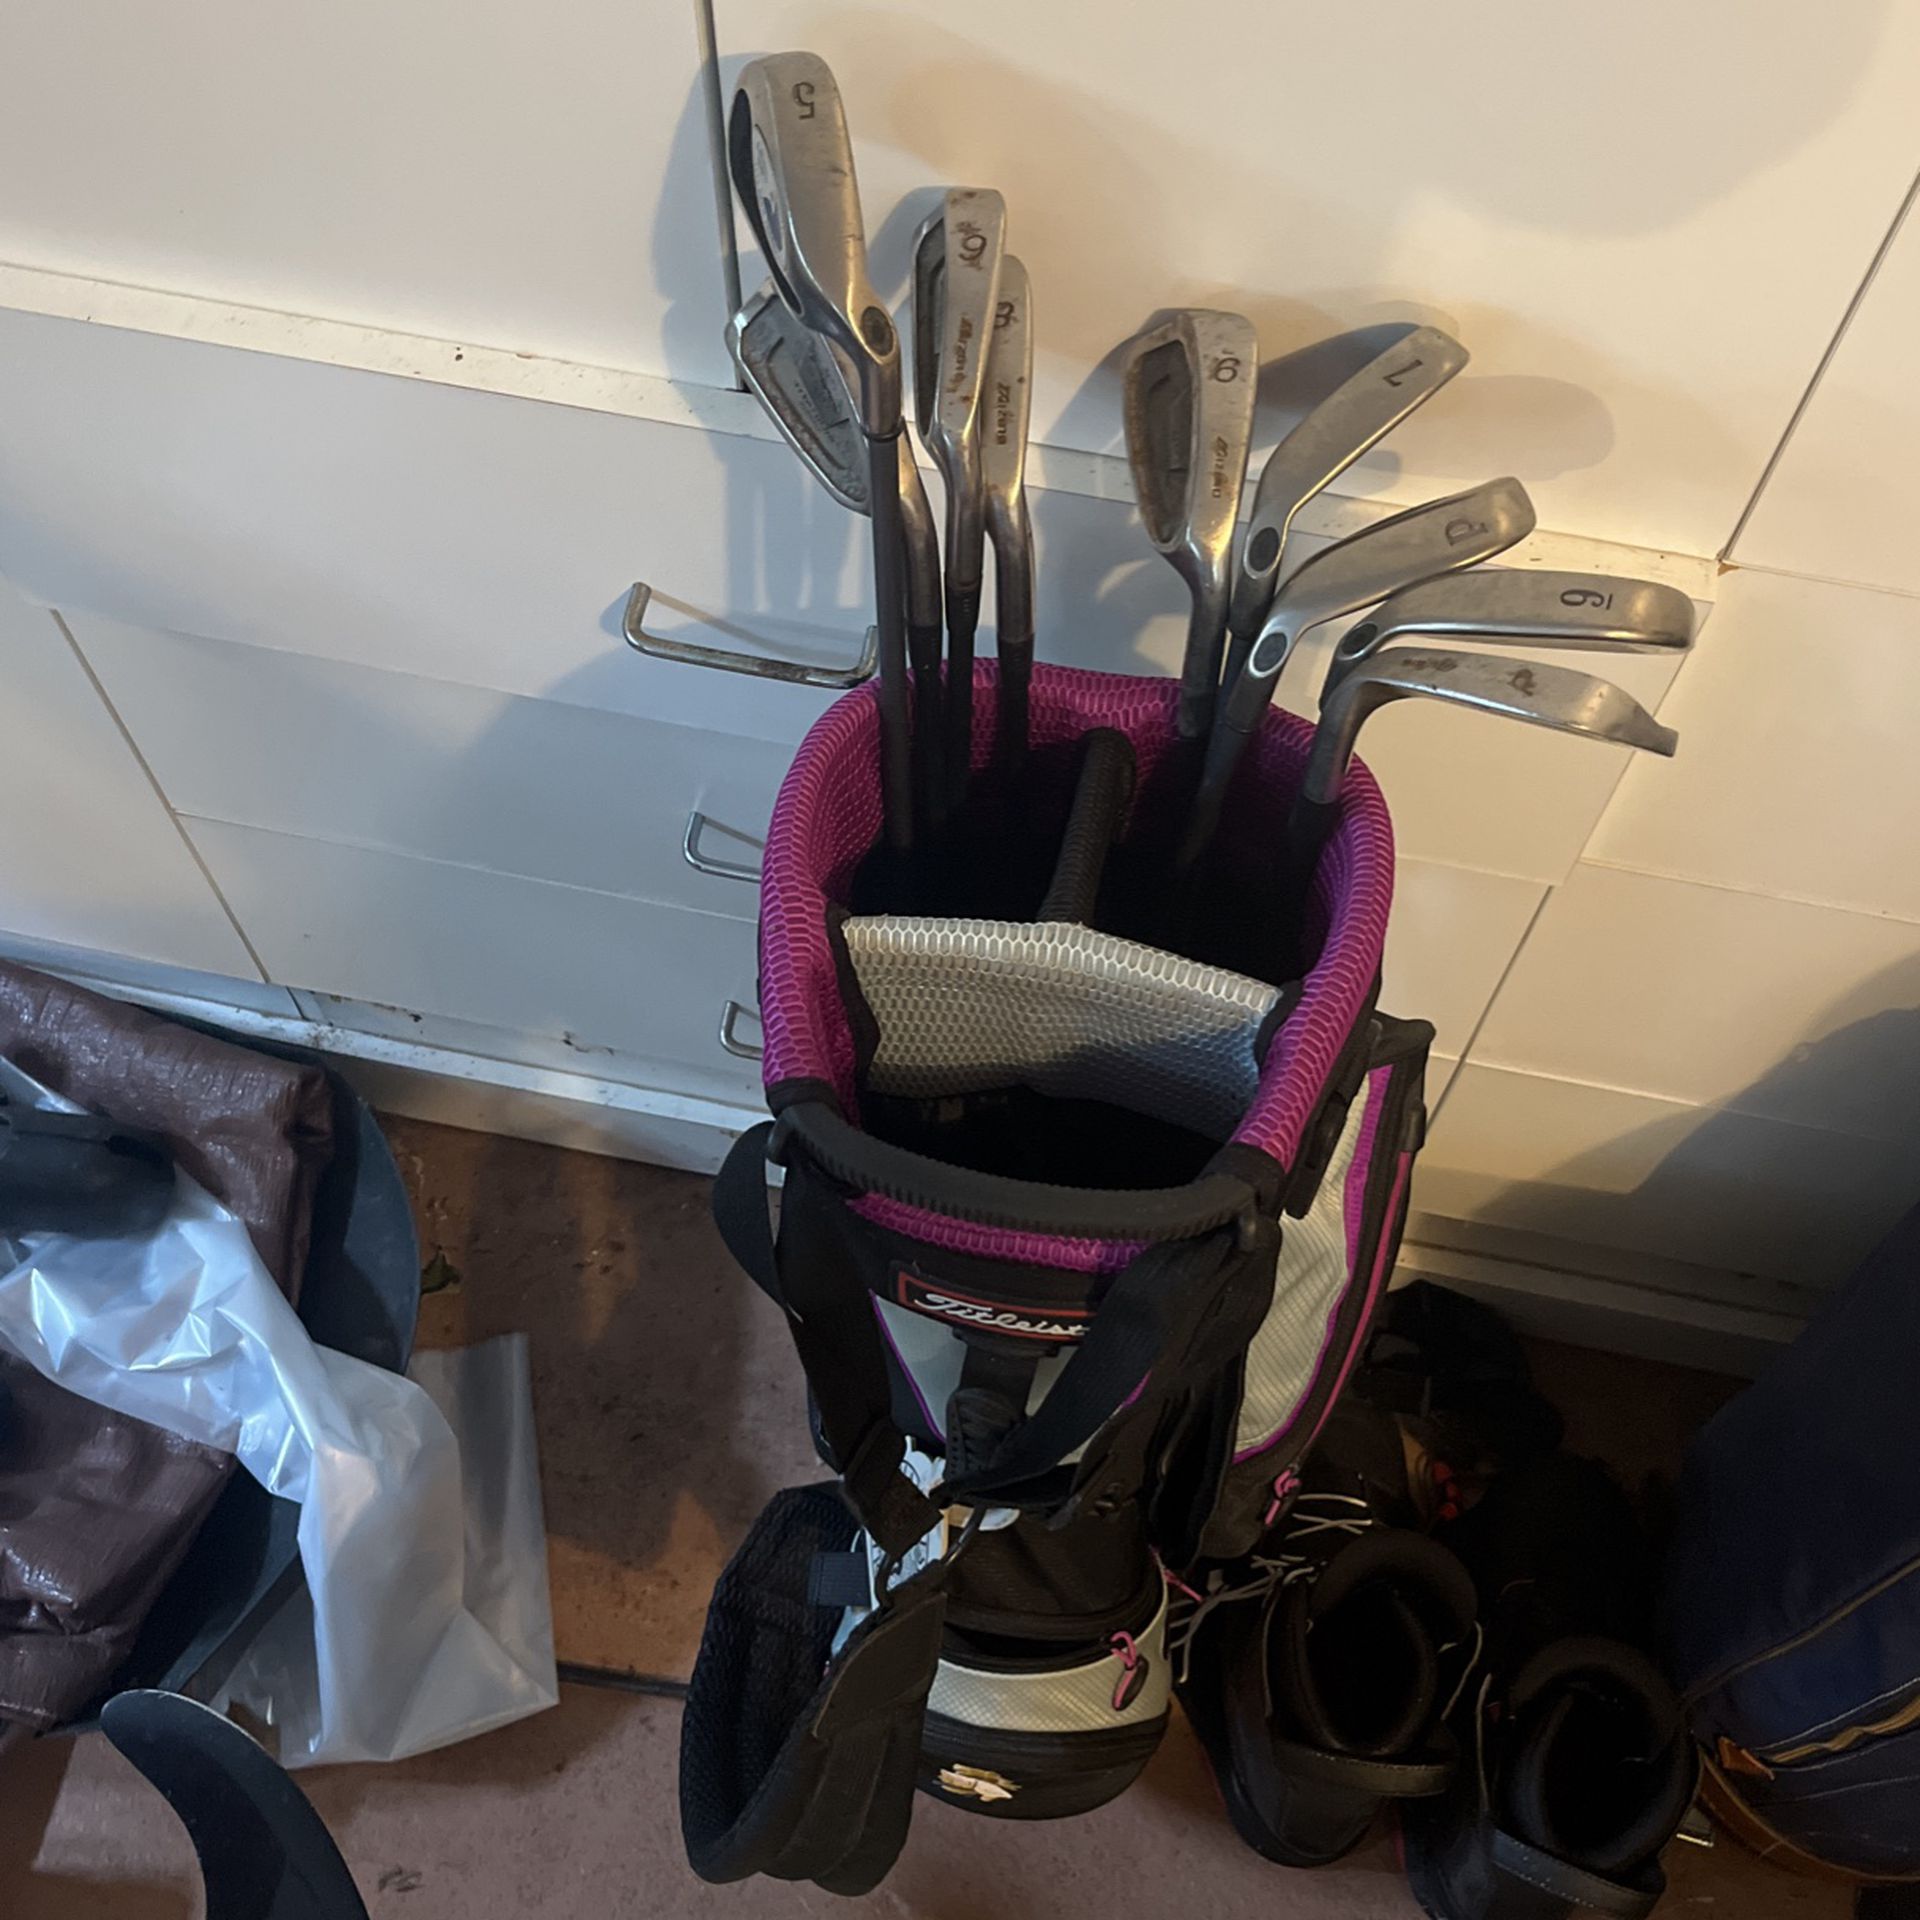 Women’s Irons + Golf Bag 